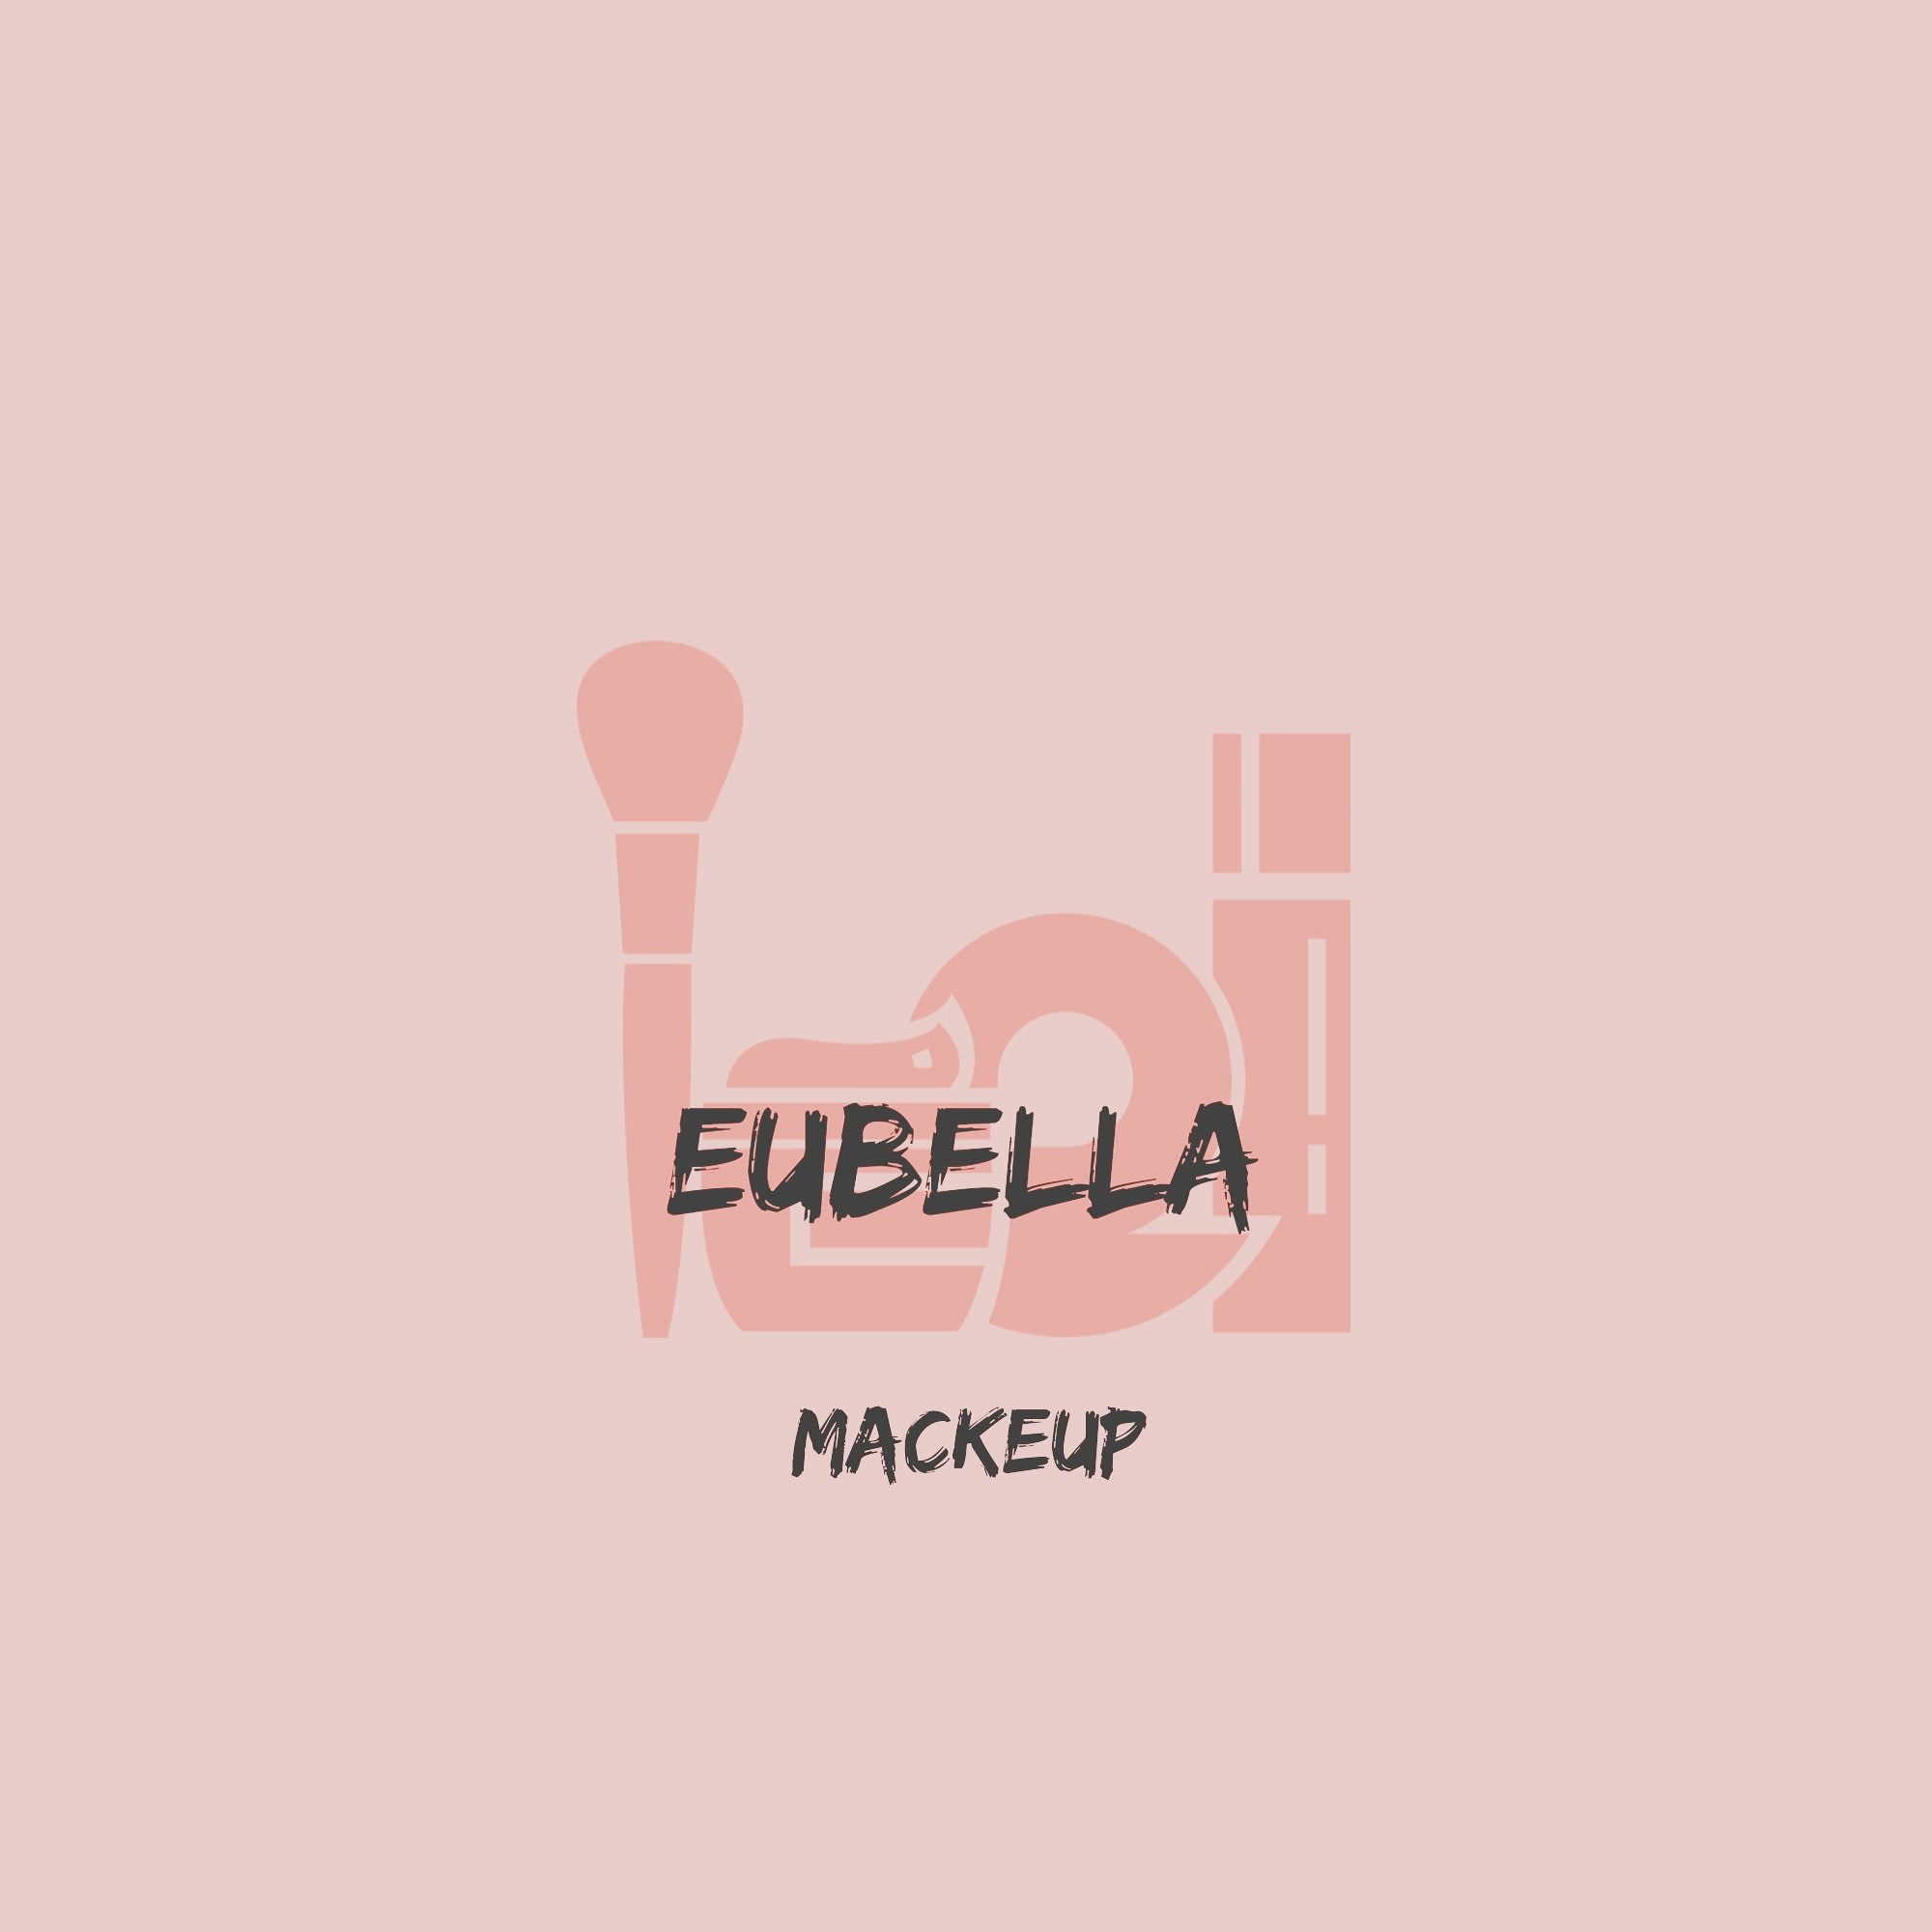 Eubella Makeup